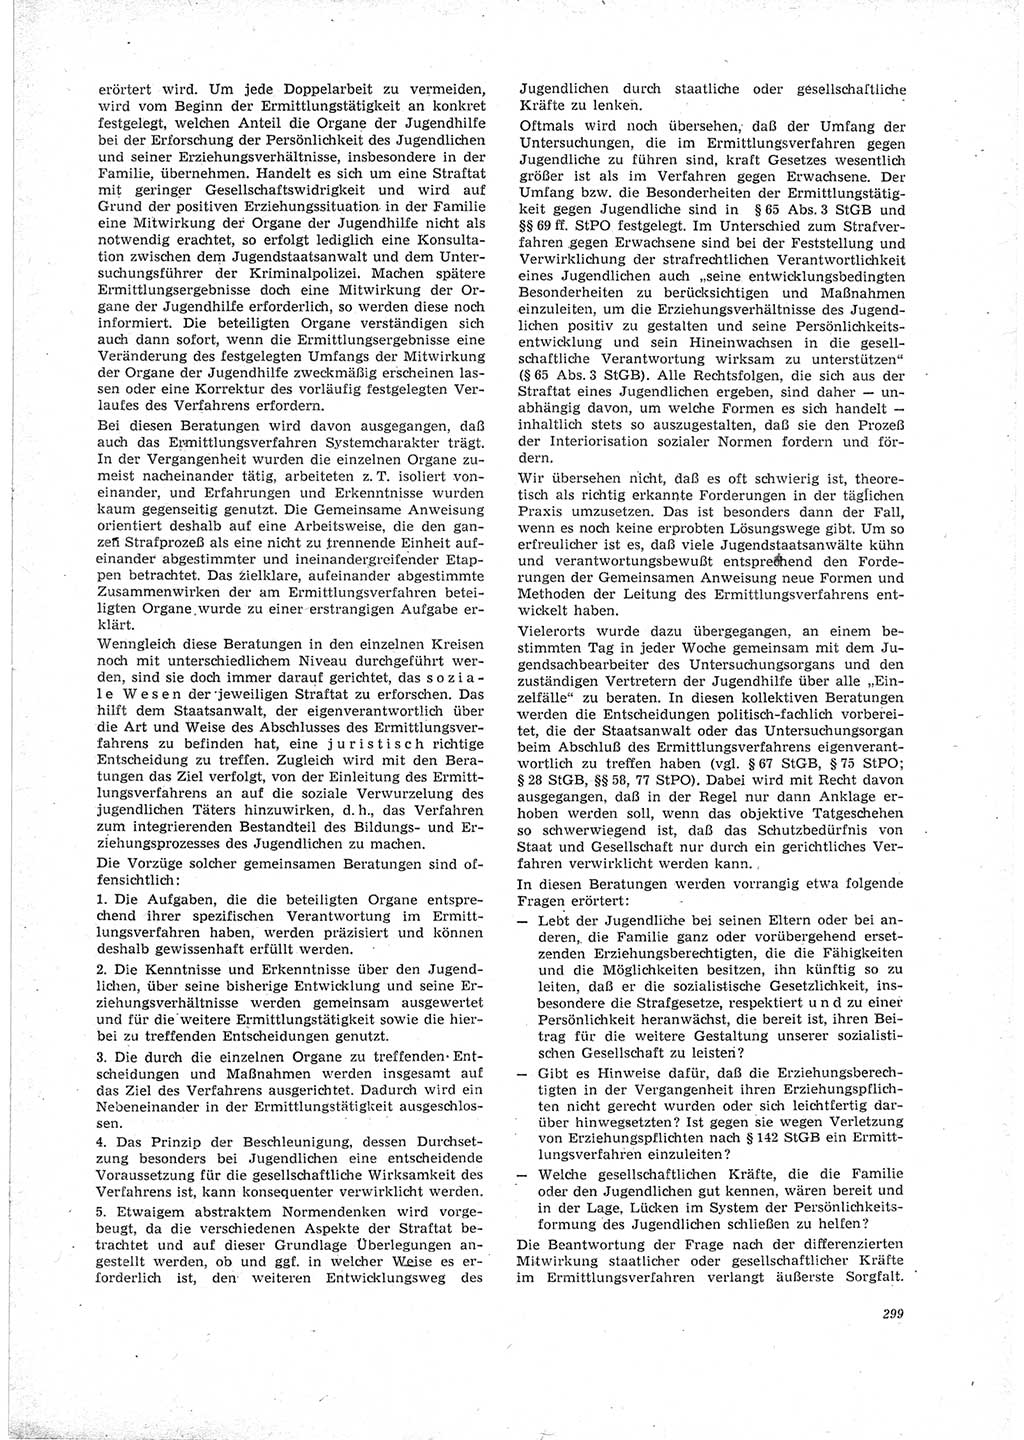 Neue Justiz (NJ), Zeitschrift für Recht und Rechtswissenschaft [Deutsche Demokratische Republik (DDR)], 23. Jahrgang 1969, Seite 299 (NJ DDR 1969, S. 299)